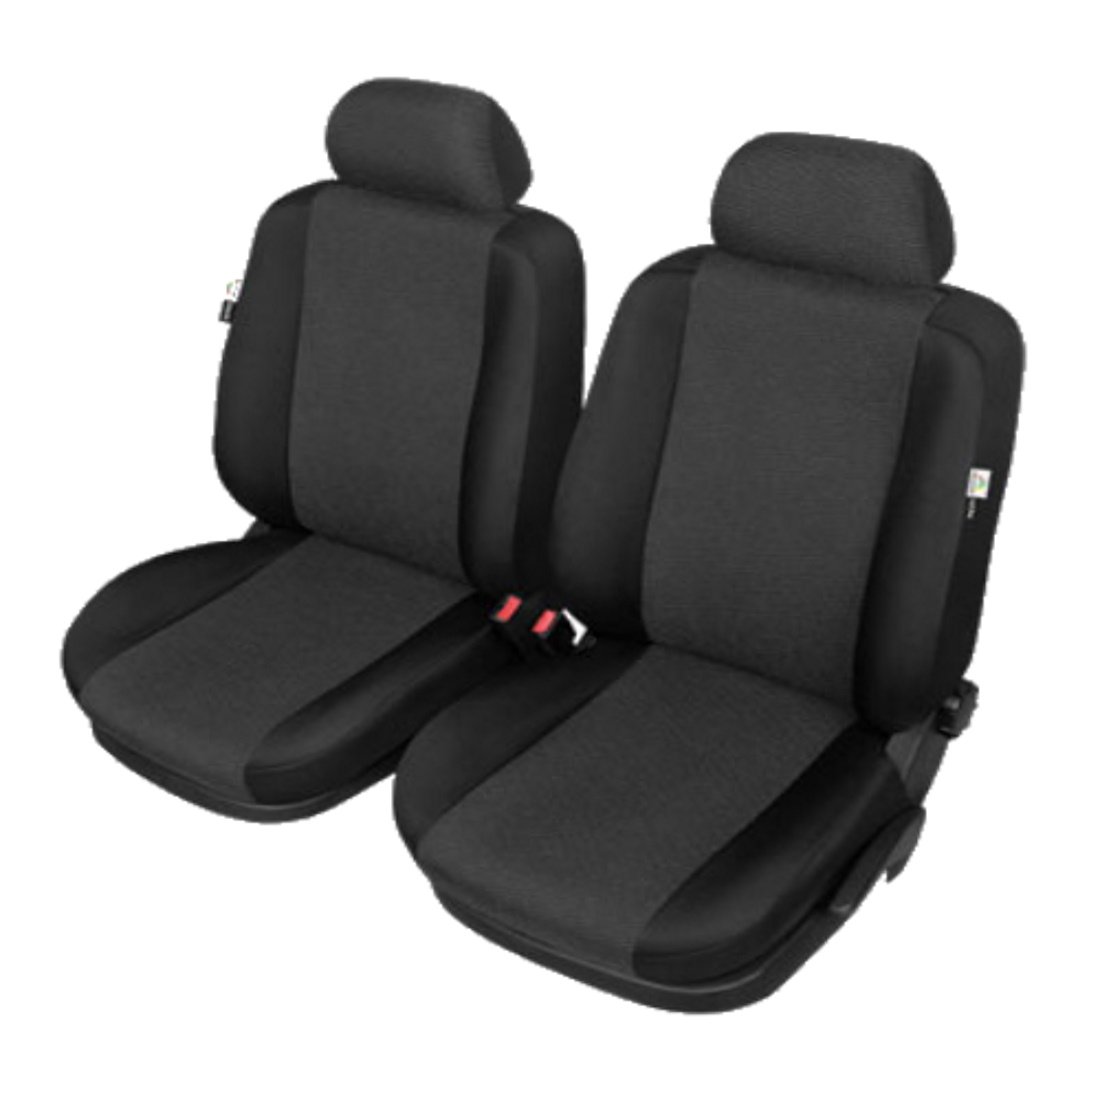 Sitzbezüge Vorne - VW Caddy III, IV ab 2003 - ARES passgenau - beste Qualität Airbags geeignet von KEGEL